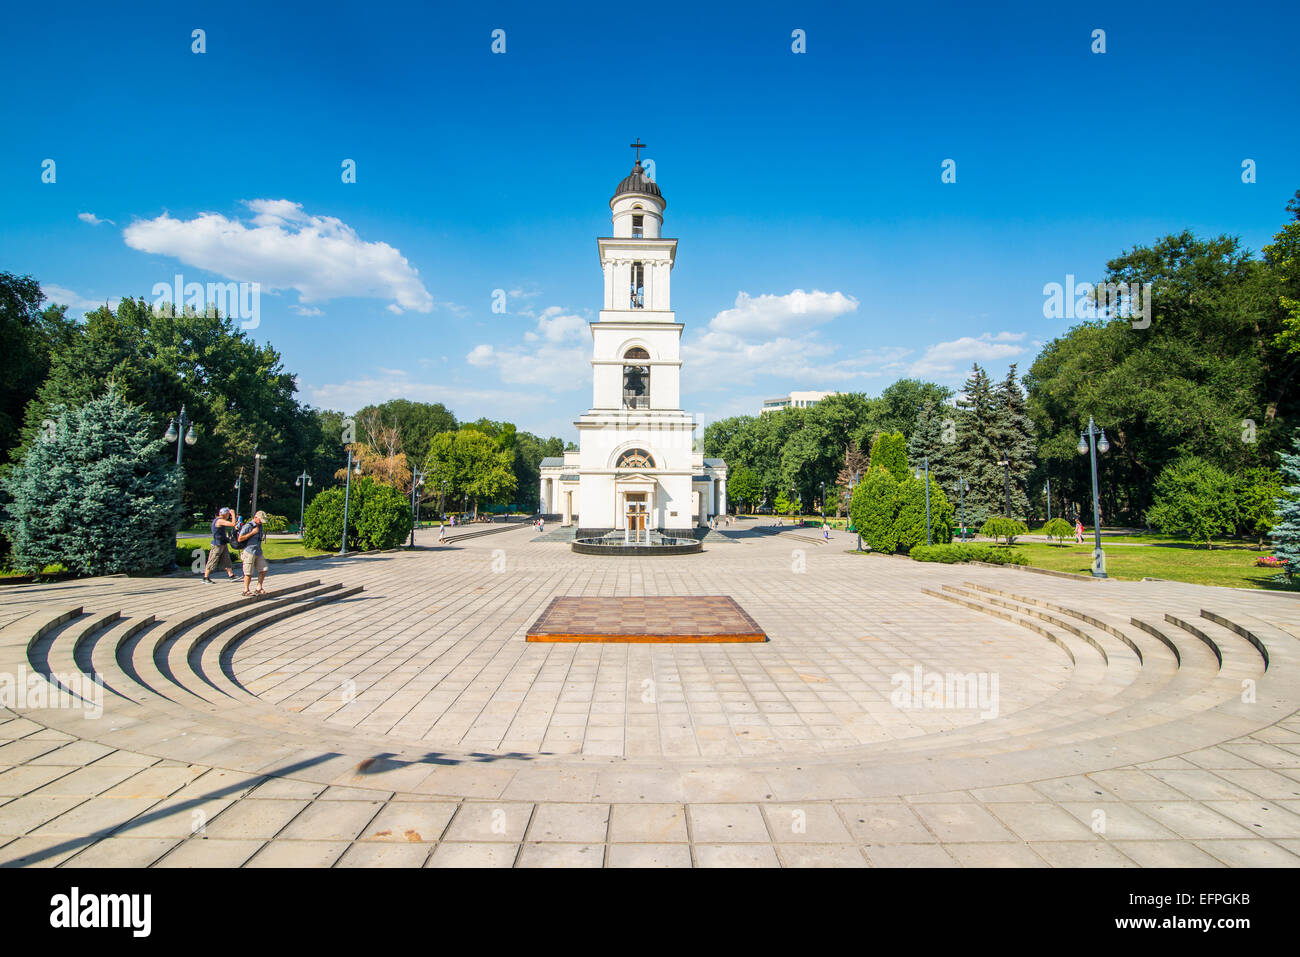 Clocher avant la cathédrale de la nativité dans le centre de Chisinau, capitale de la Moldavie, de l'Europe Banque D'Images